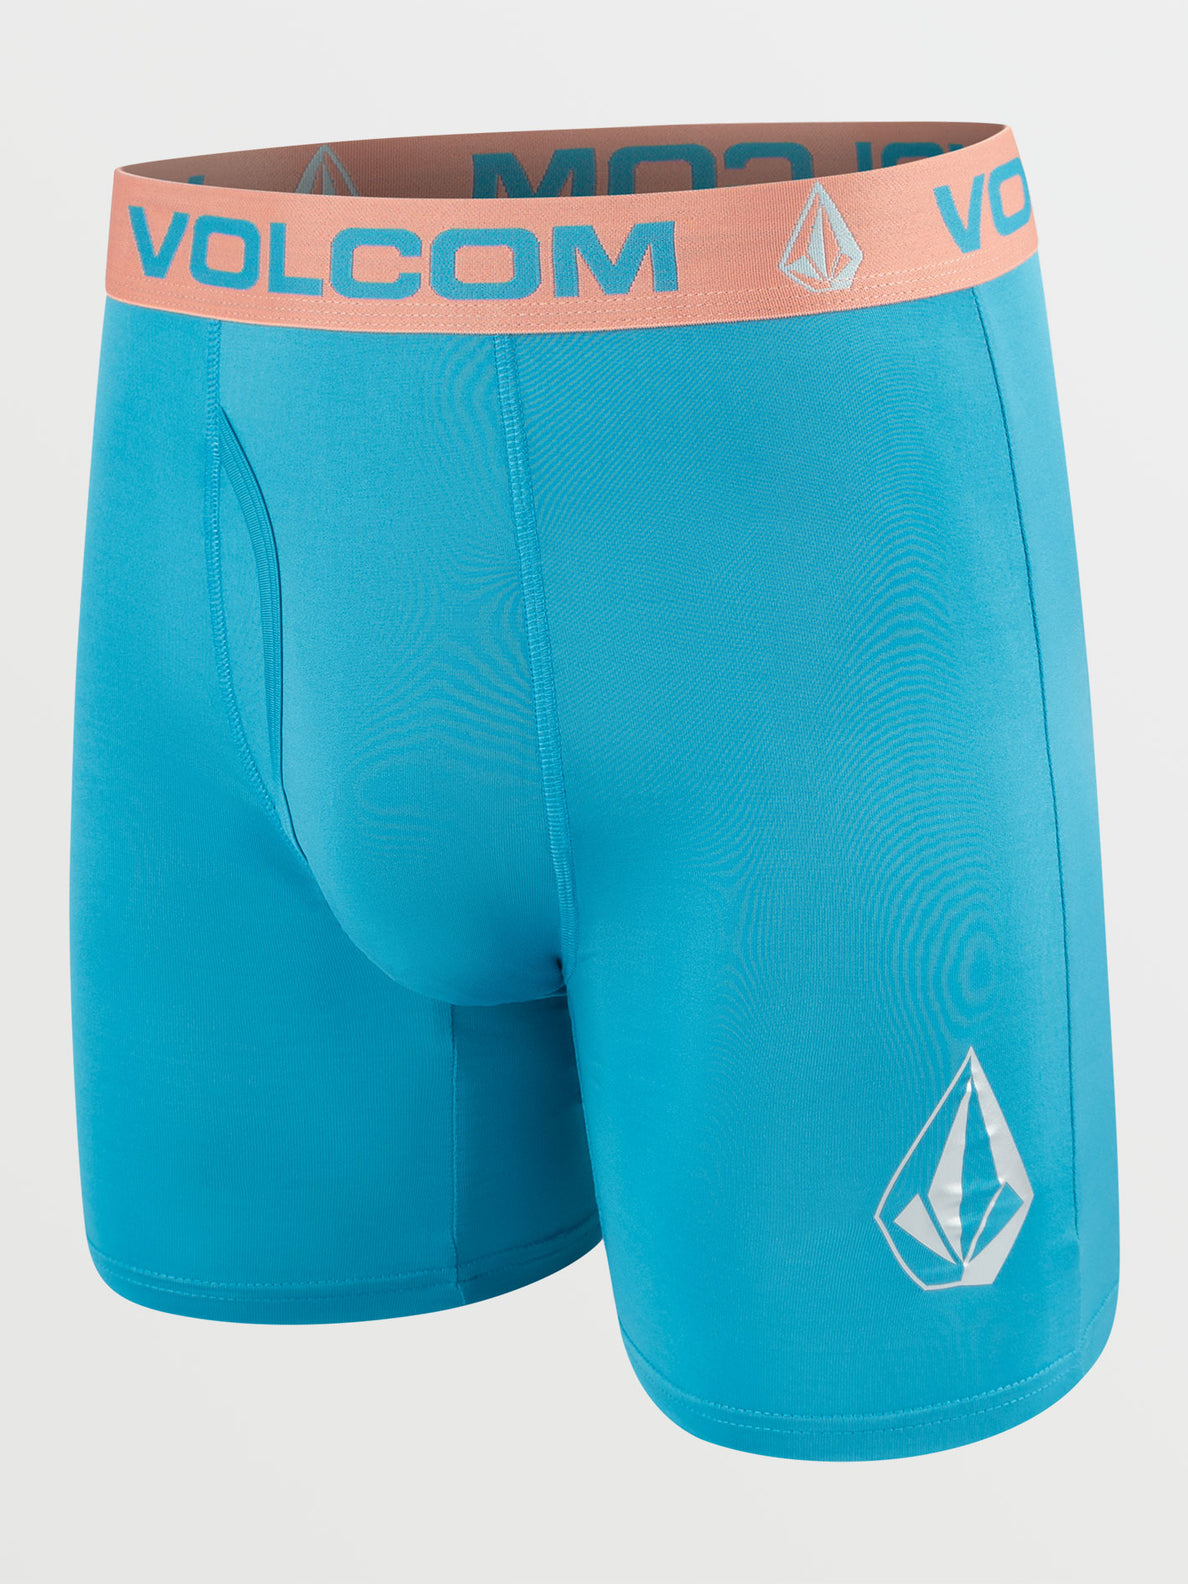 Volcom 4 Pack Boxer Brief 7.5 - Multi